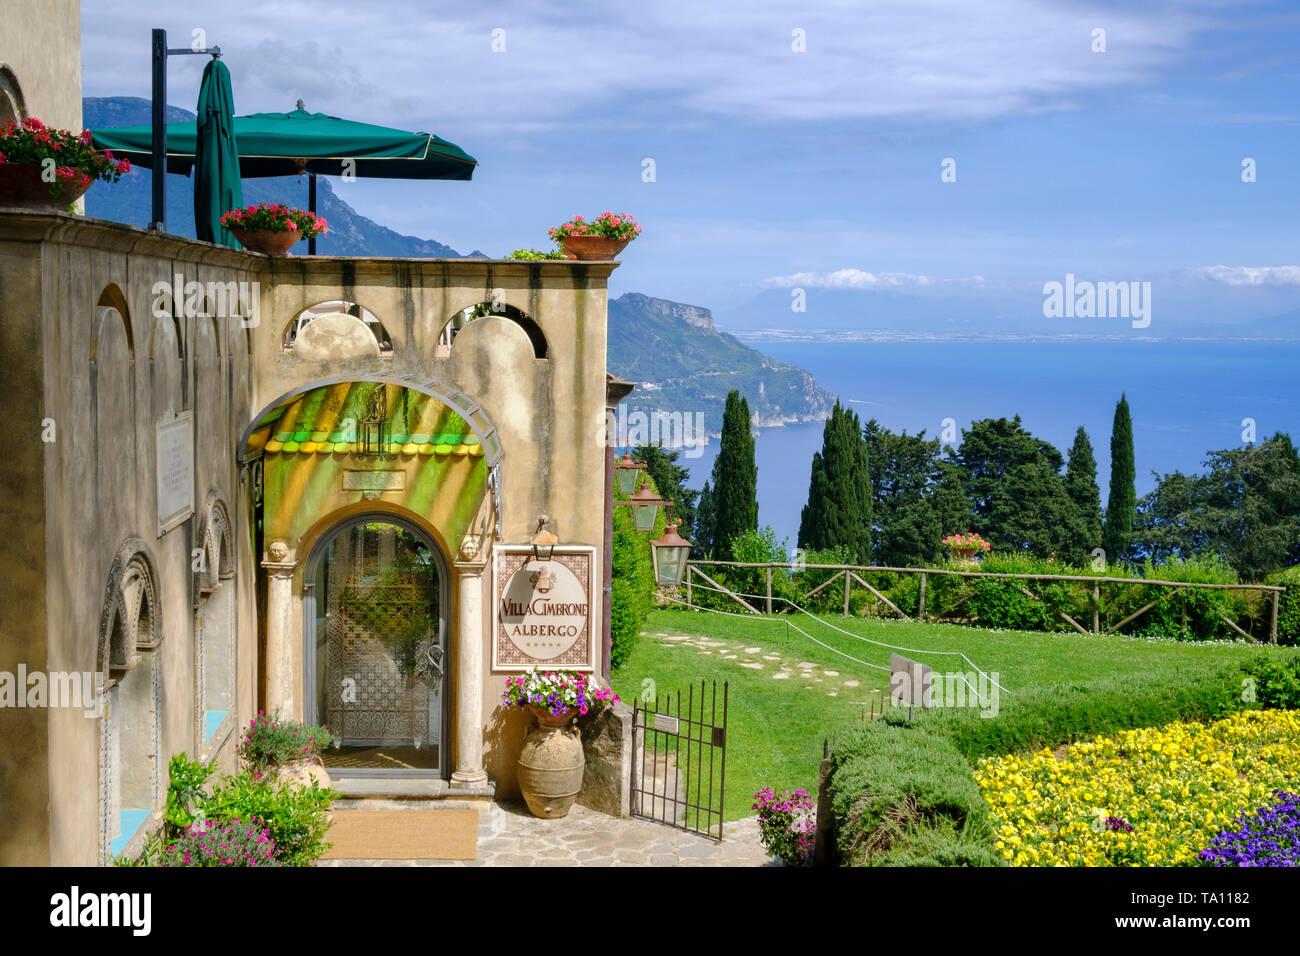 Hotel Villa Cimbrone (Hotel) à Ravello surplombant la côte Amalfitaine et Golfe de Salerne dans la région Campanie en Italie Banque D'Images